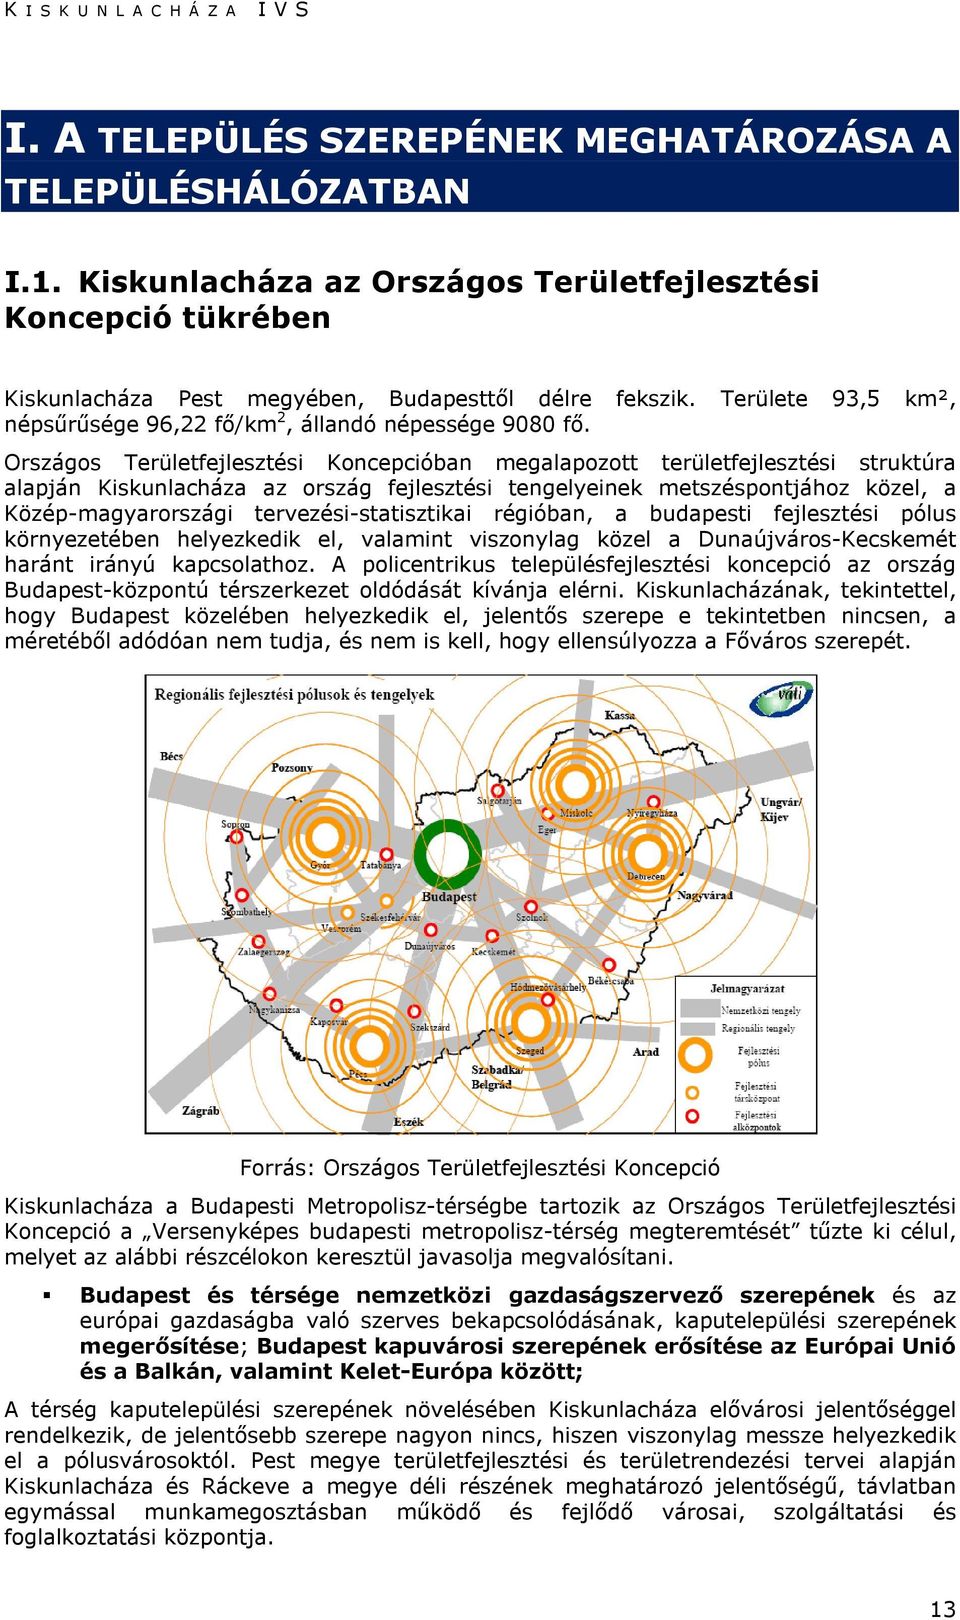 Országos Területfejlesztési Koncepcióban megalapozott területfejlesztési struktúra alapján Kiskunlacháza az ország fejlesztési tengelyeinek metszéspontjához közel, a Közép-magyarországi